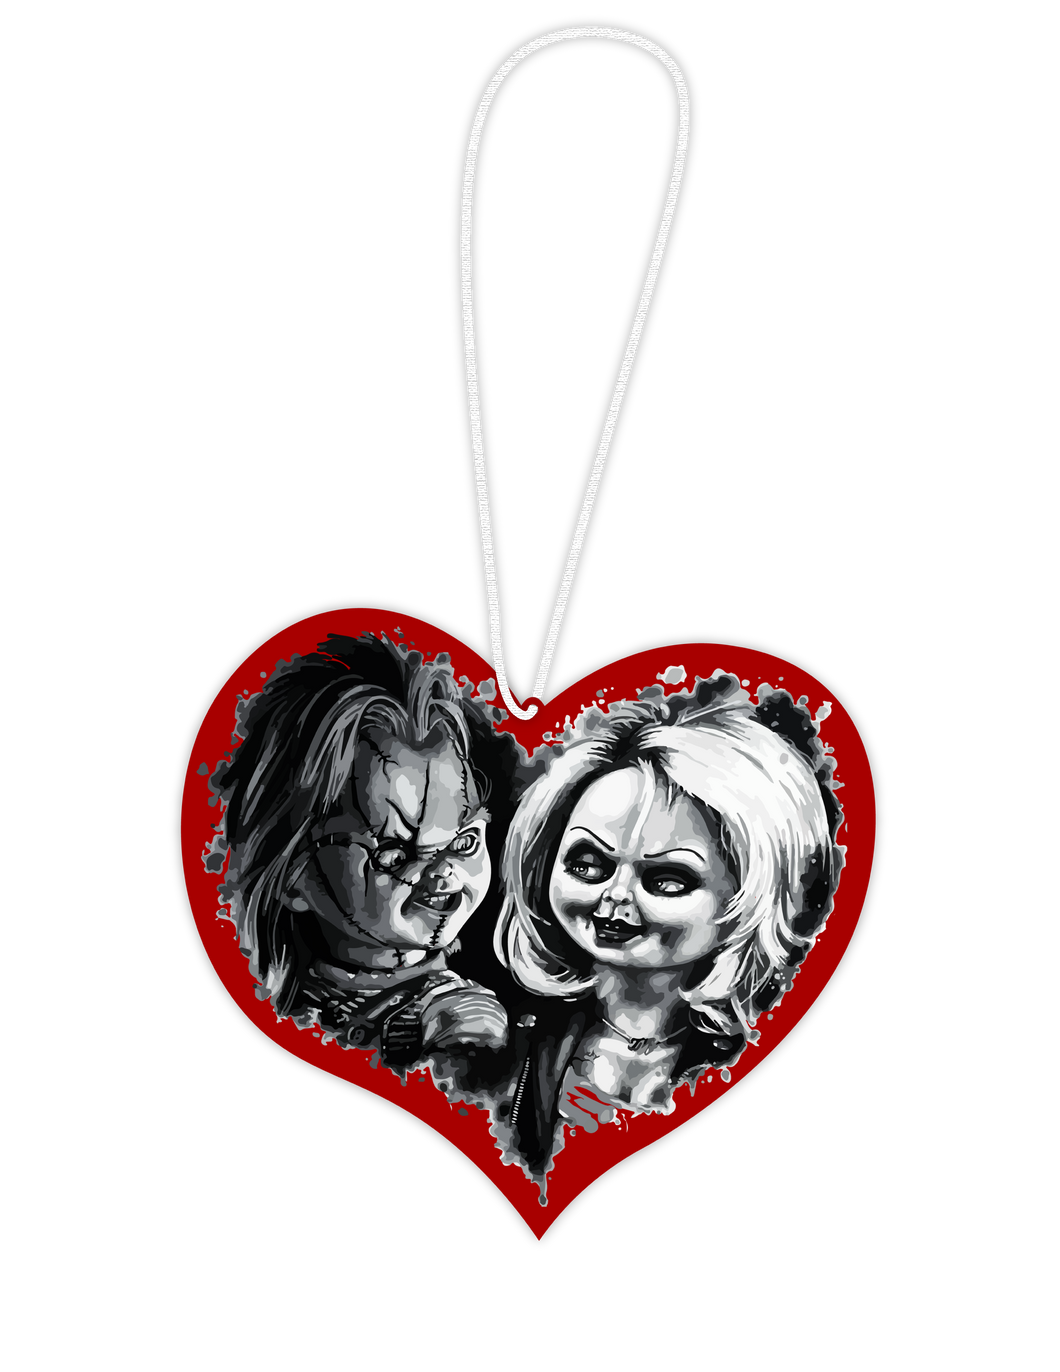 Chucky and Tiffany (Killer love) - Hangable ornament